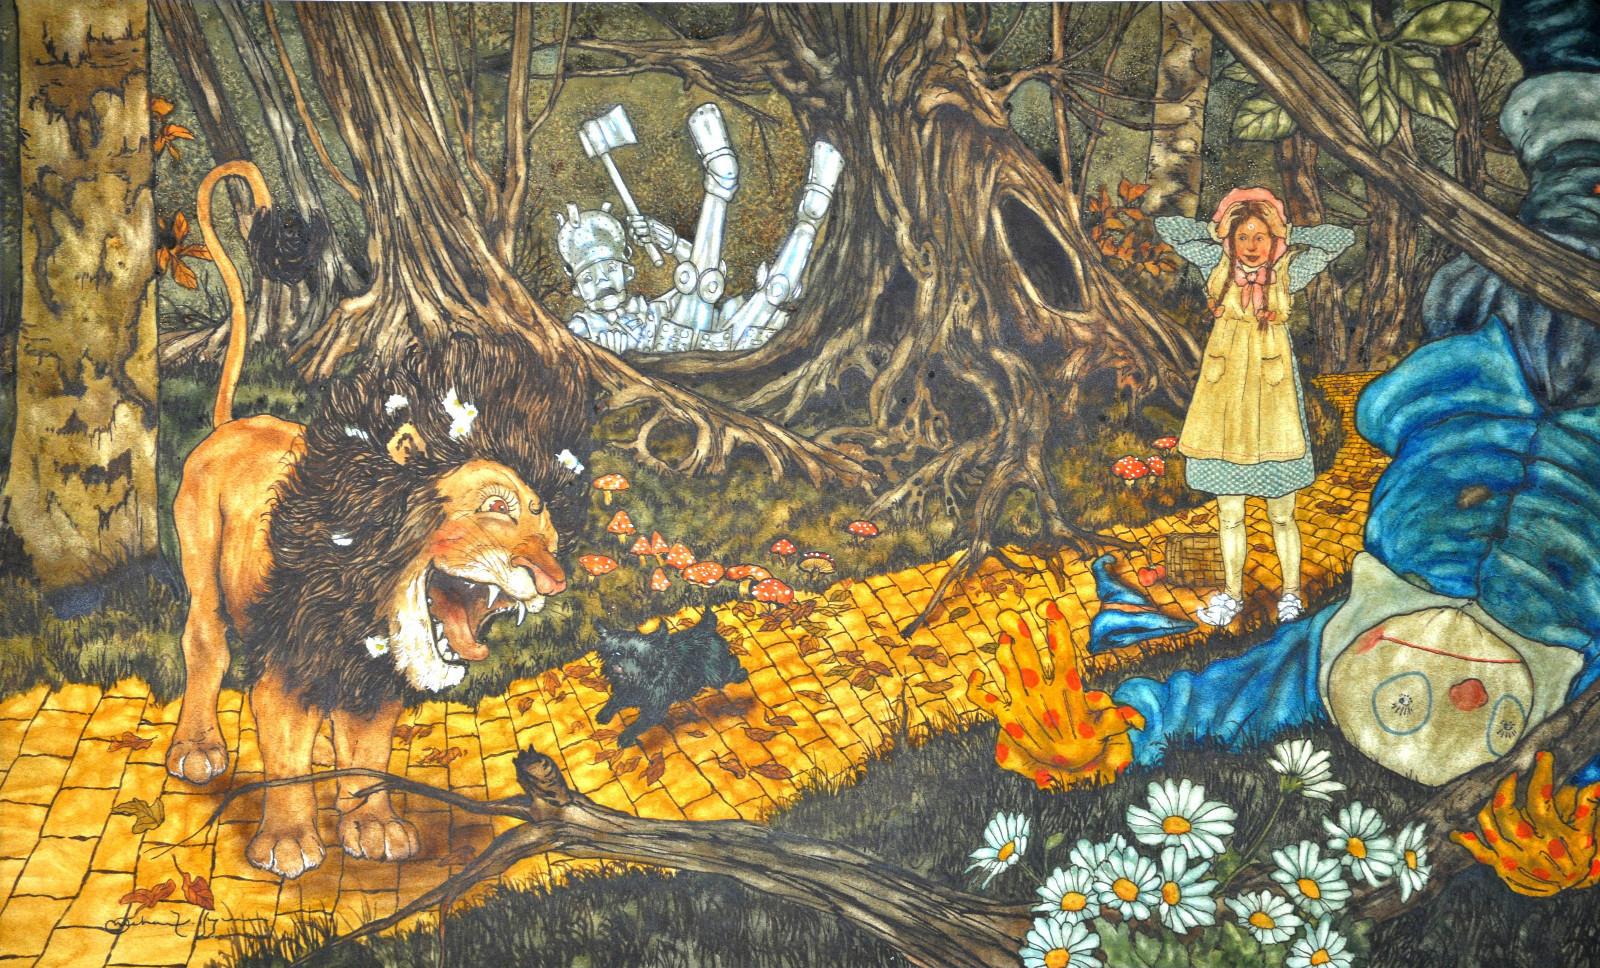 Ilustração de Michael Hague para "The Wizard of Oz".